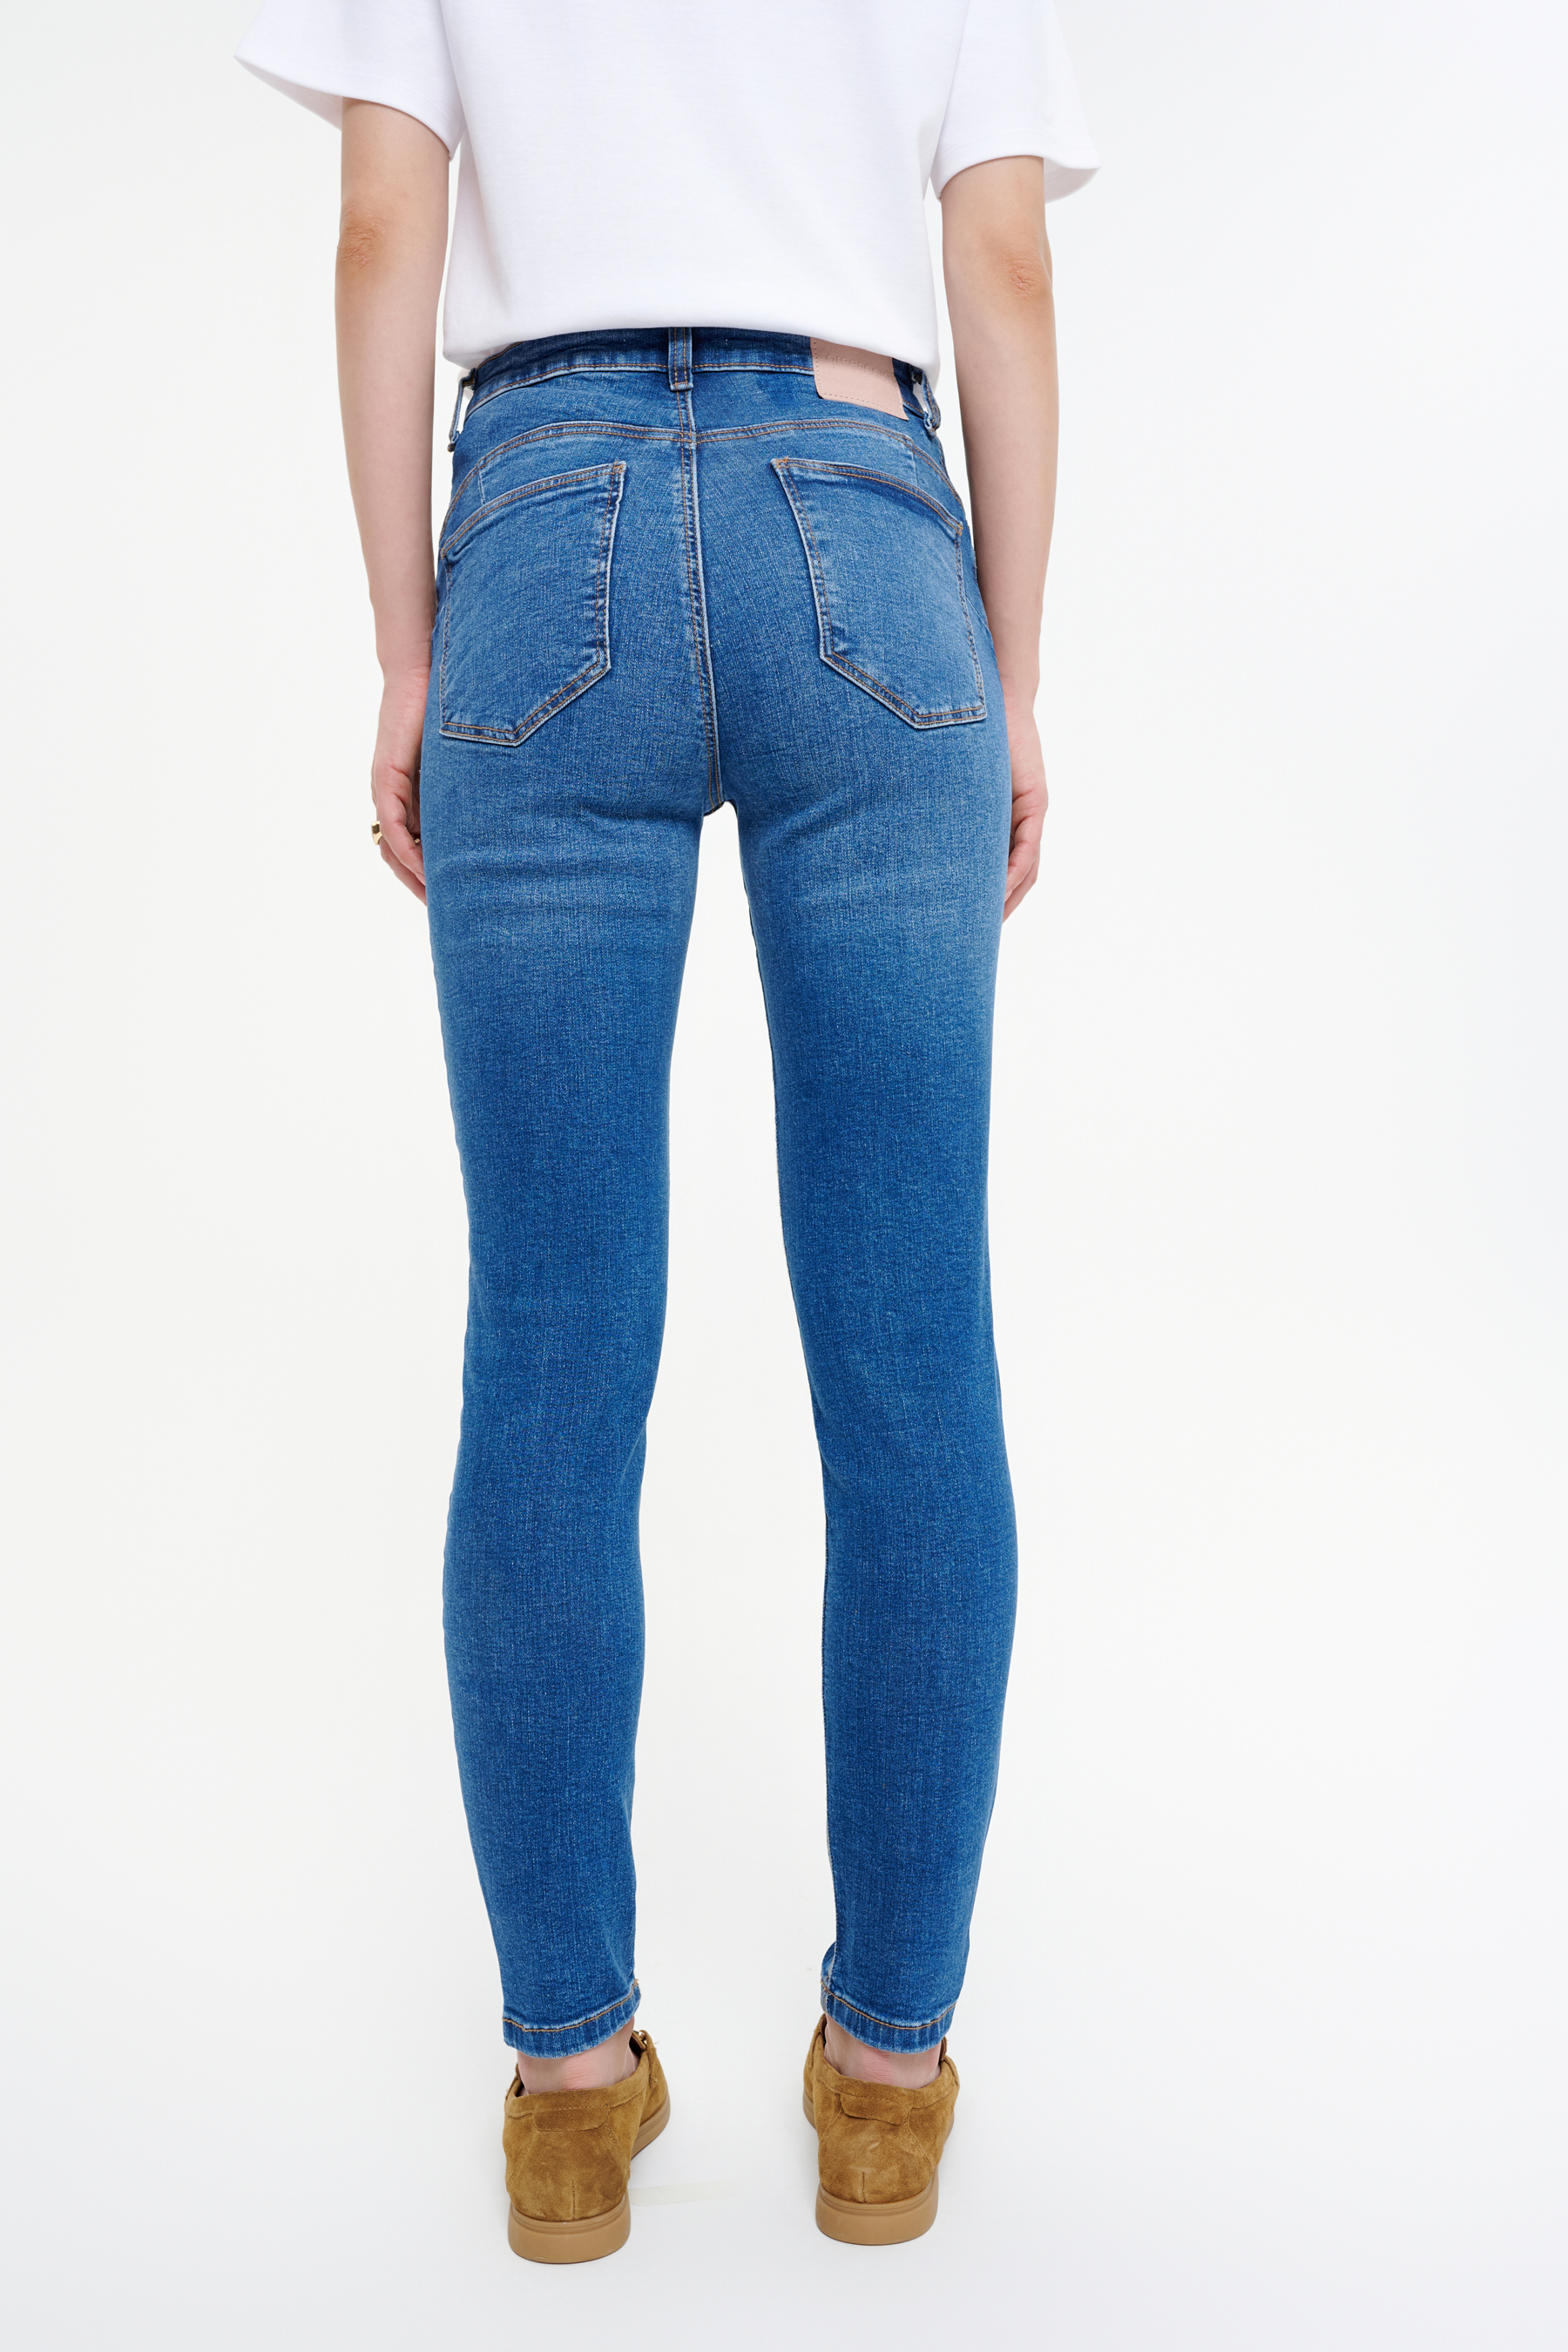 Spodnie jeansowe w niebieskim kolorze